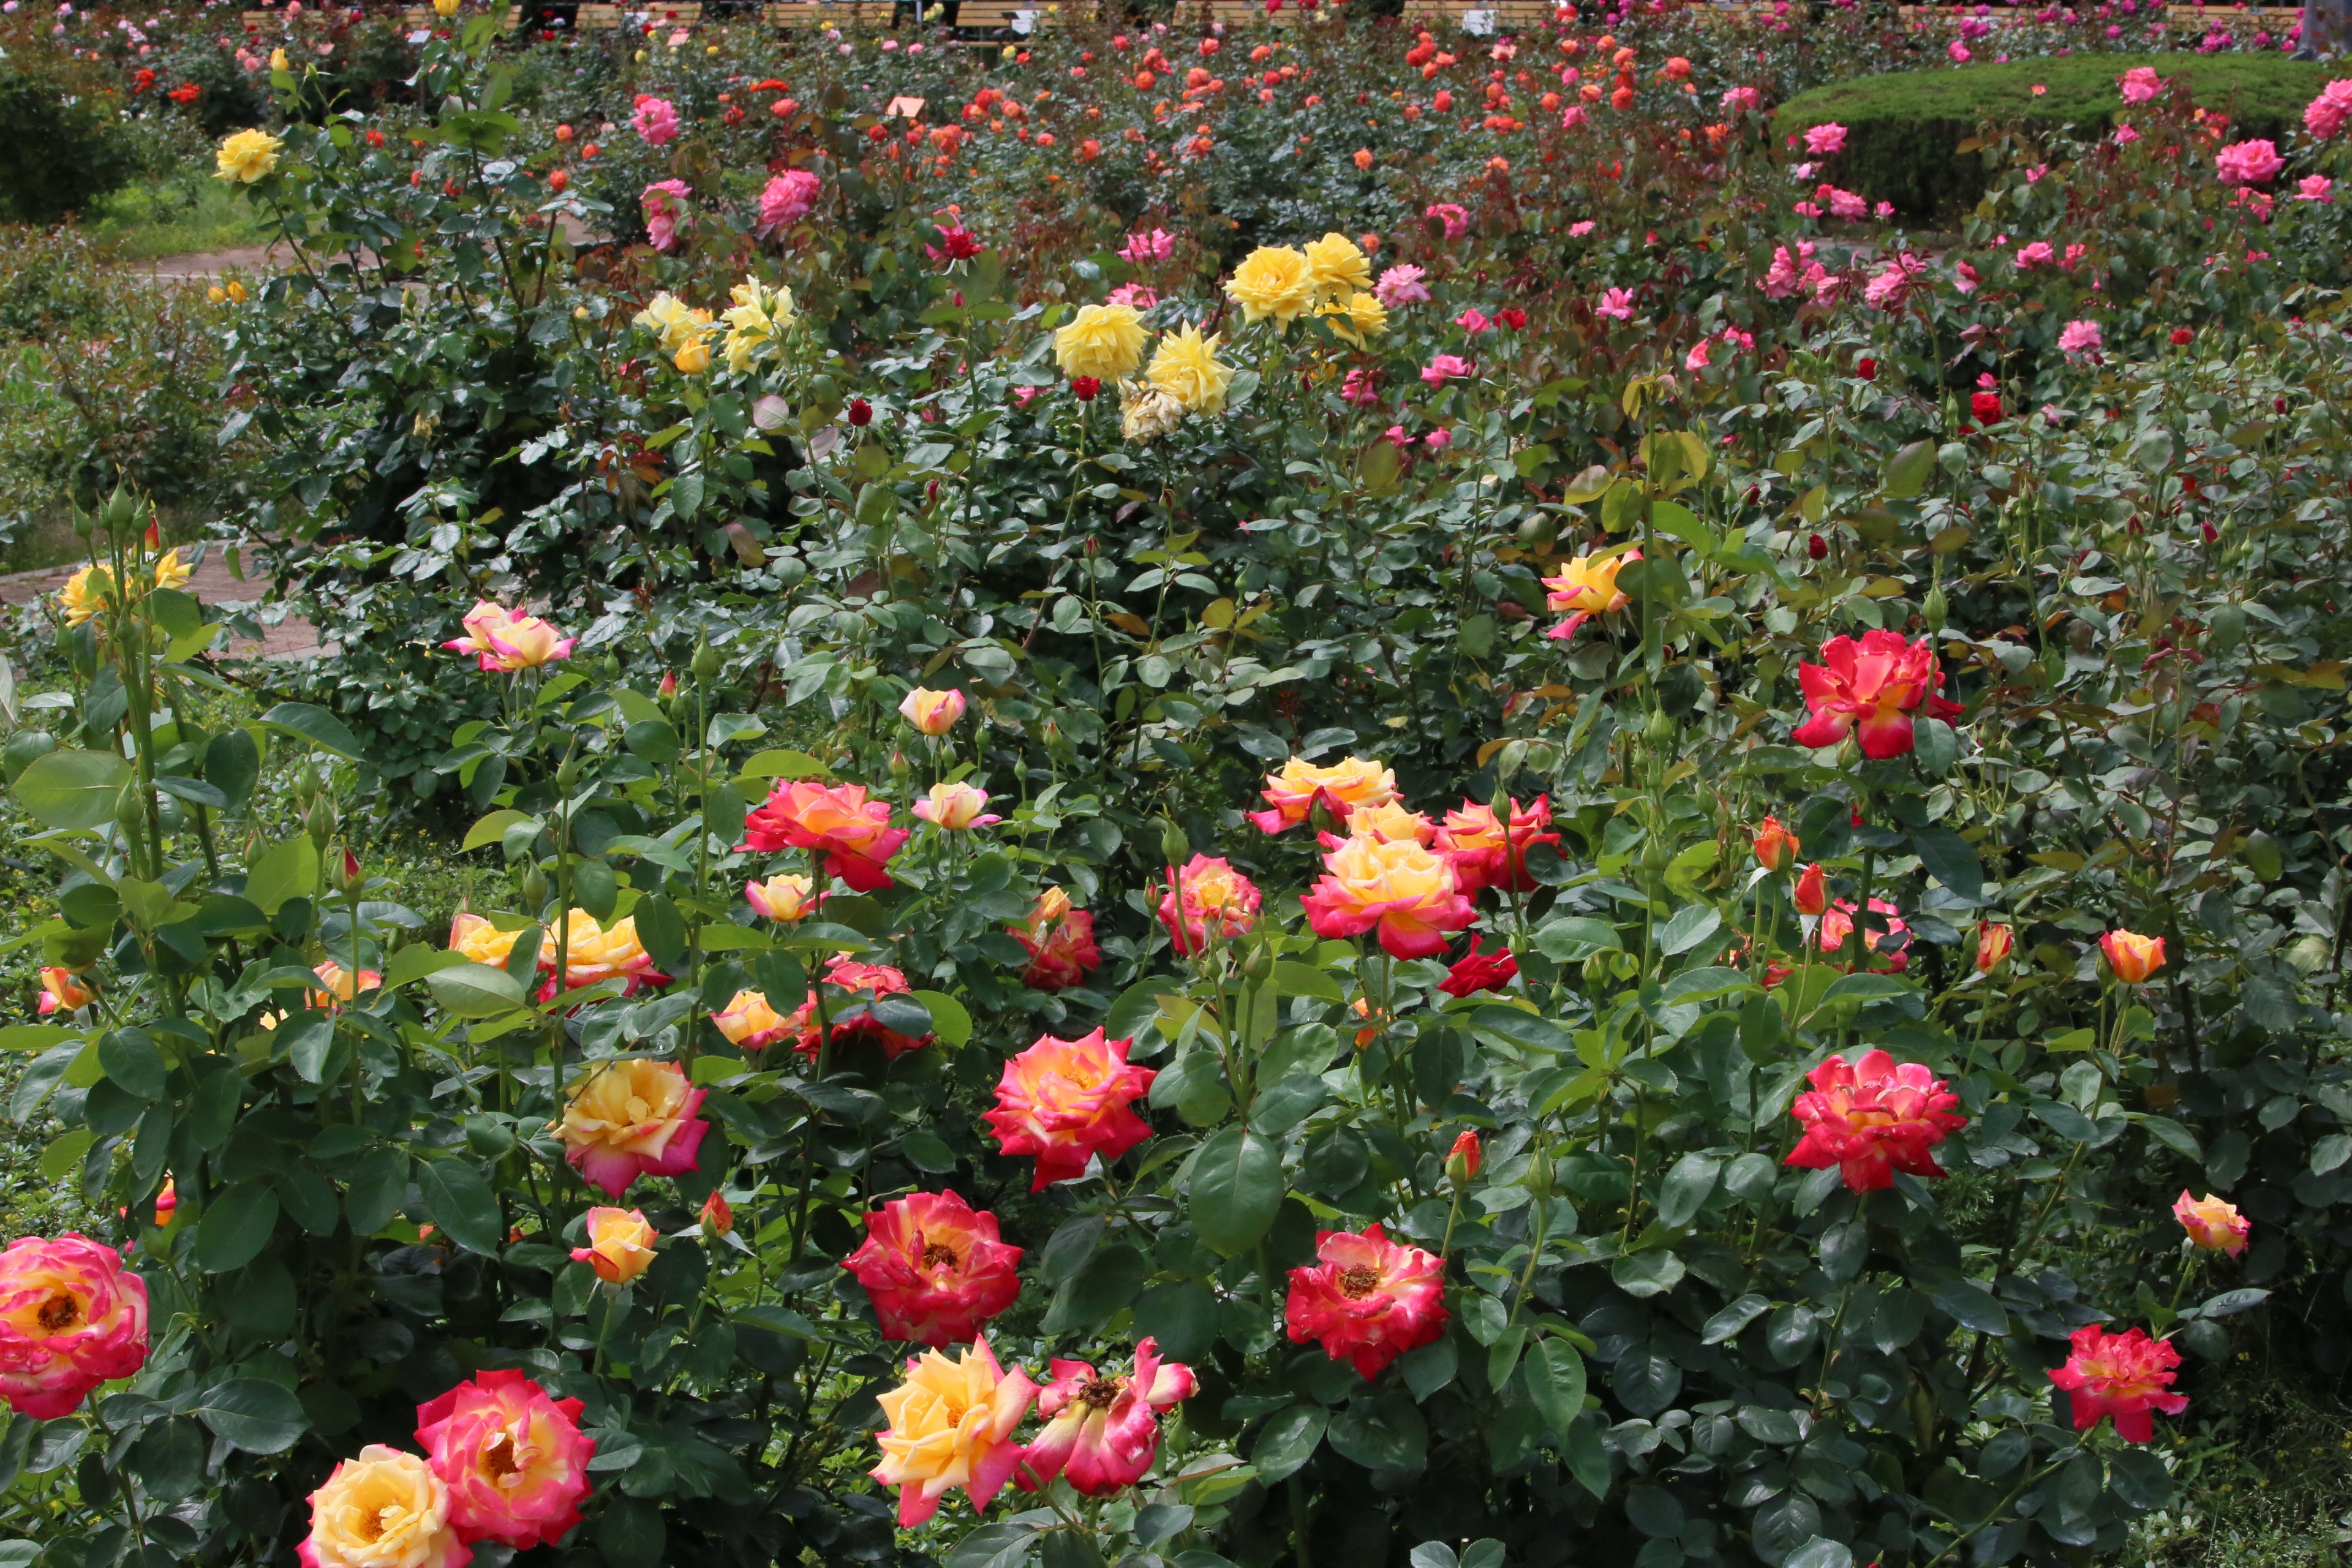 神代植物公園 ニュース スタッフより 広報係 今朝のばら園の様子です 二番花が咲きだして またばら園にバラ の賑わいが戻りつつあります 春バラは７月下旬までご覧いただけます 神代植物公園は 現在事前予約制で開園しております バラ Rose